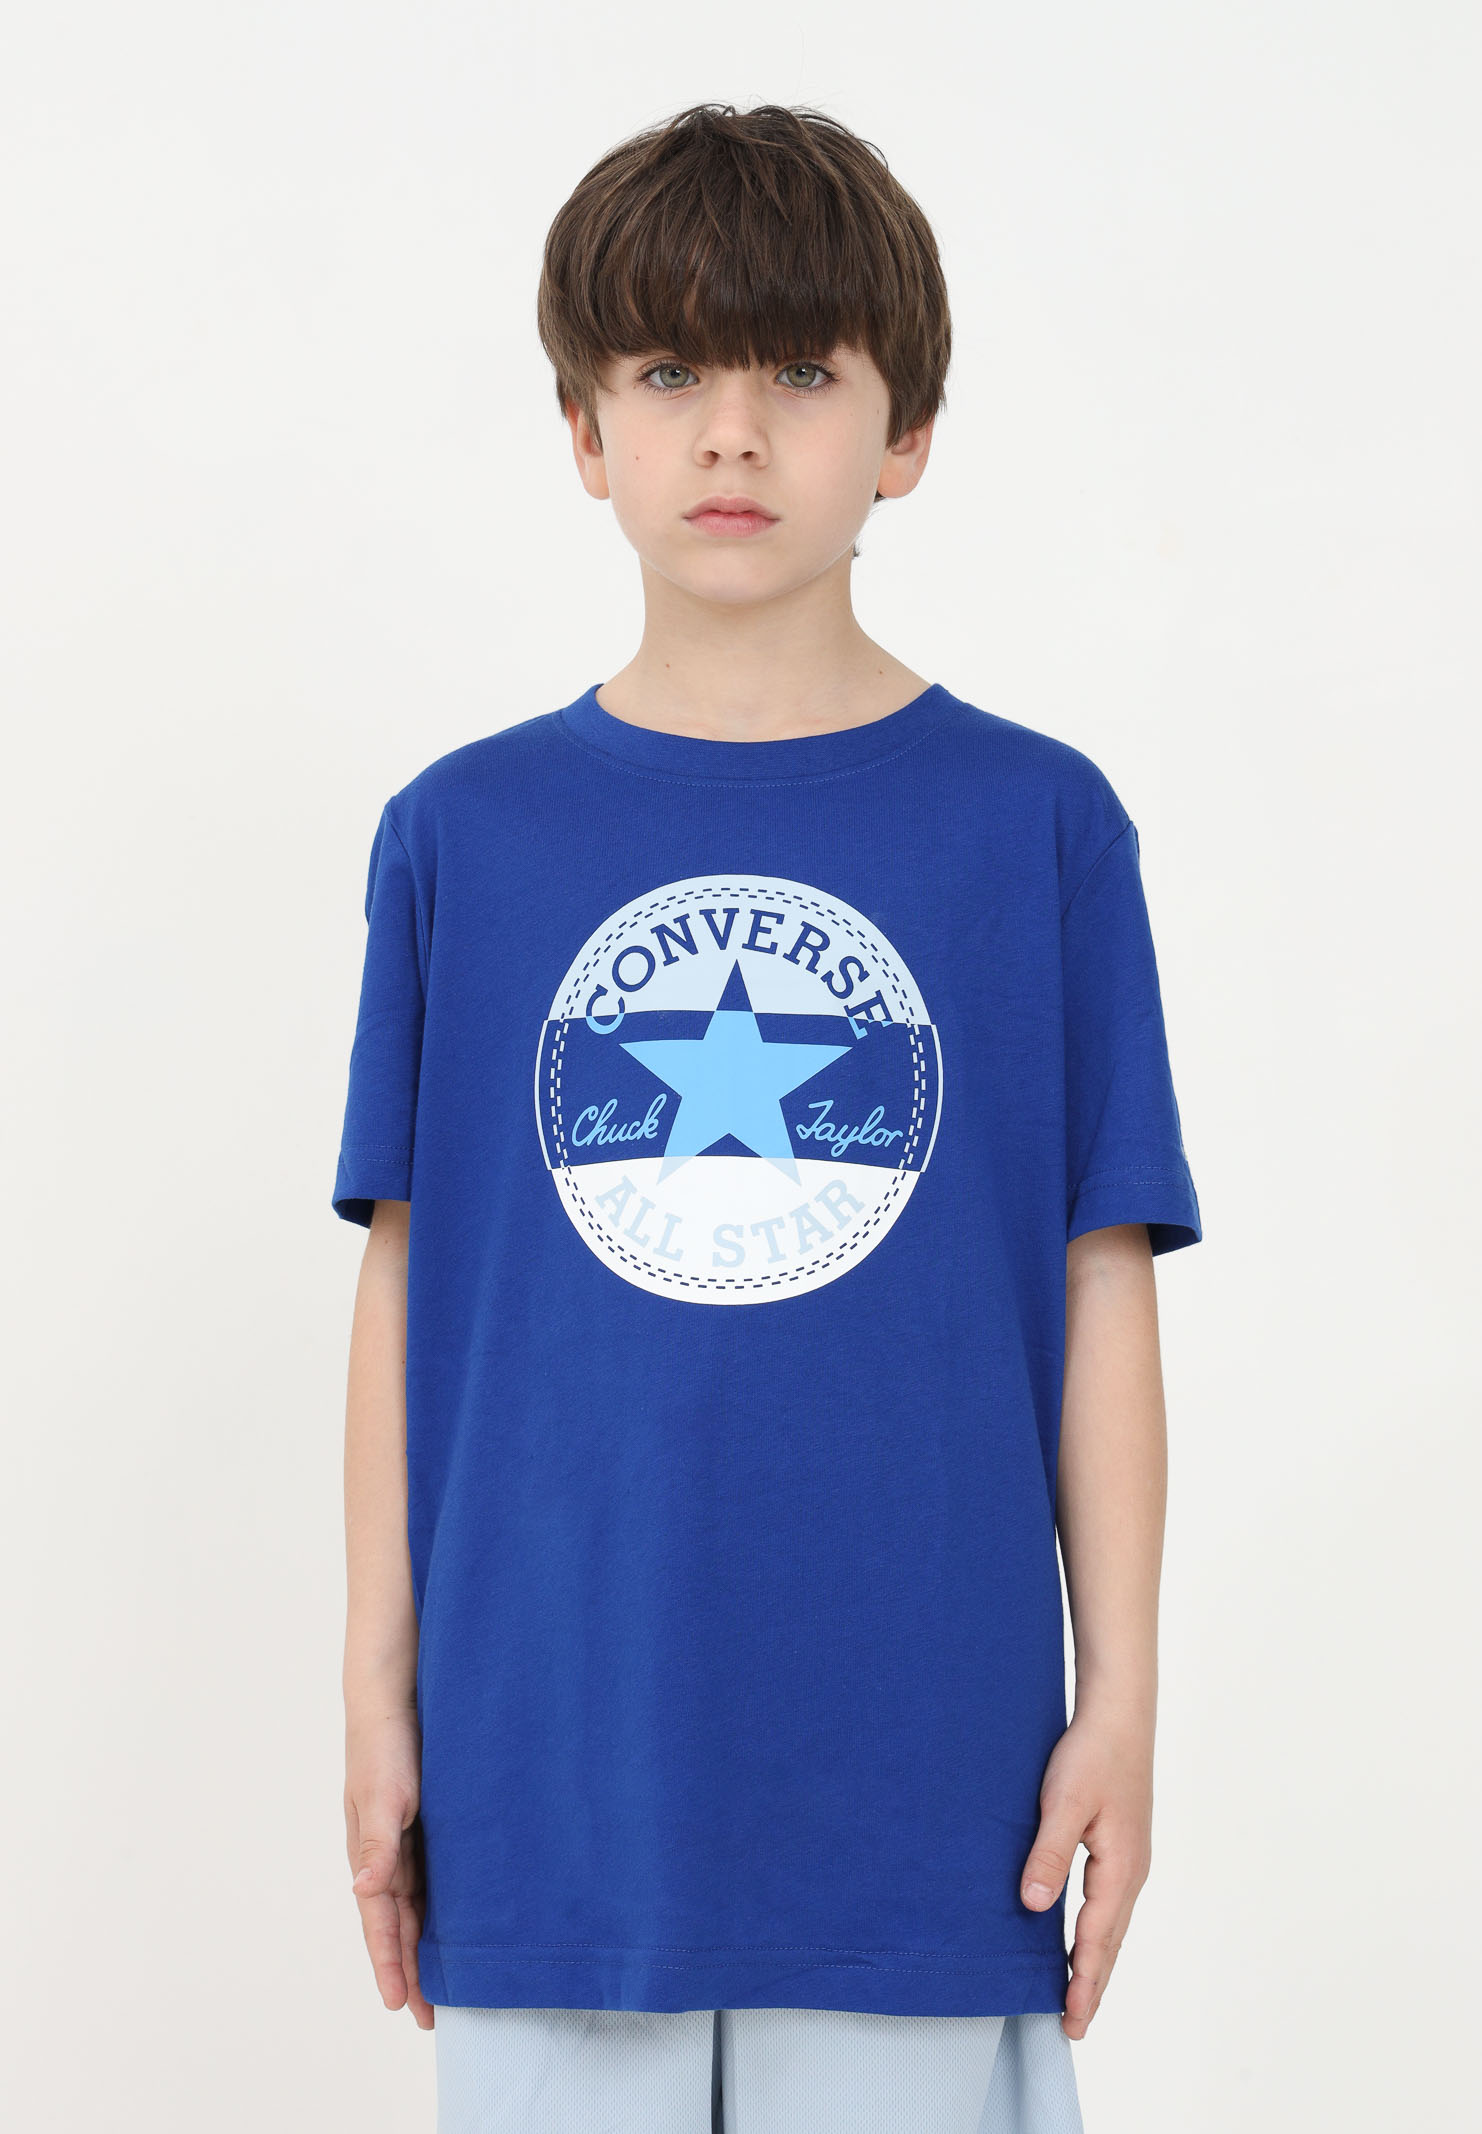 Casual for boys with maxi logo print - CONVERSE Pavidas